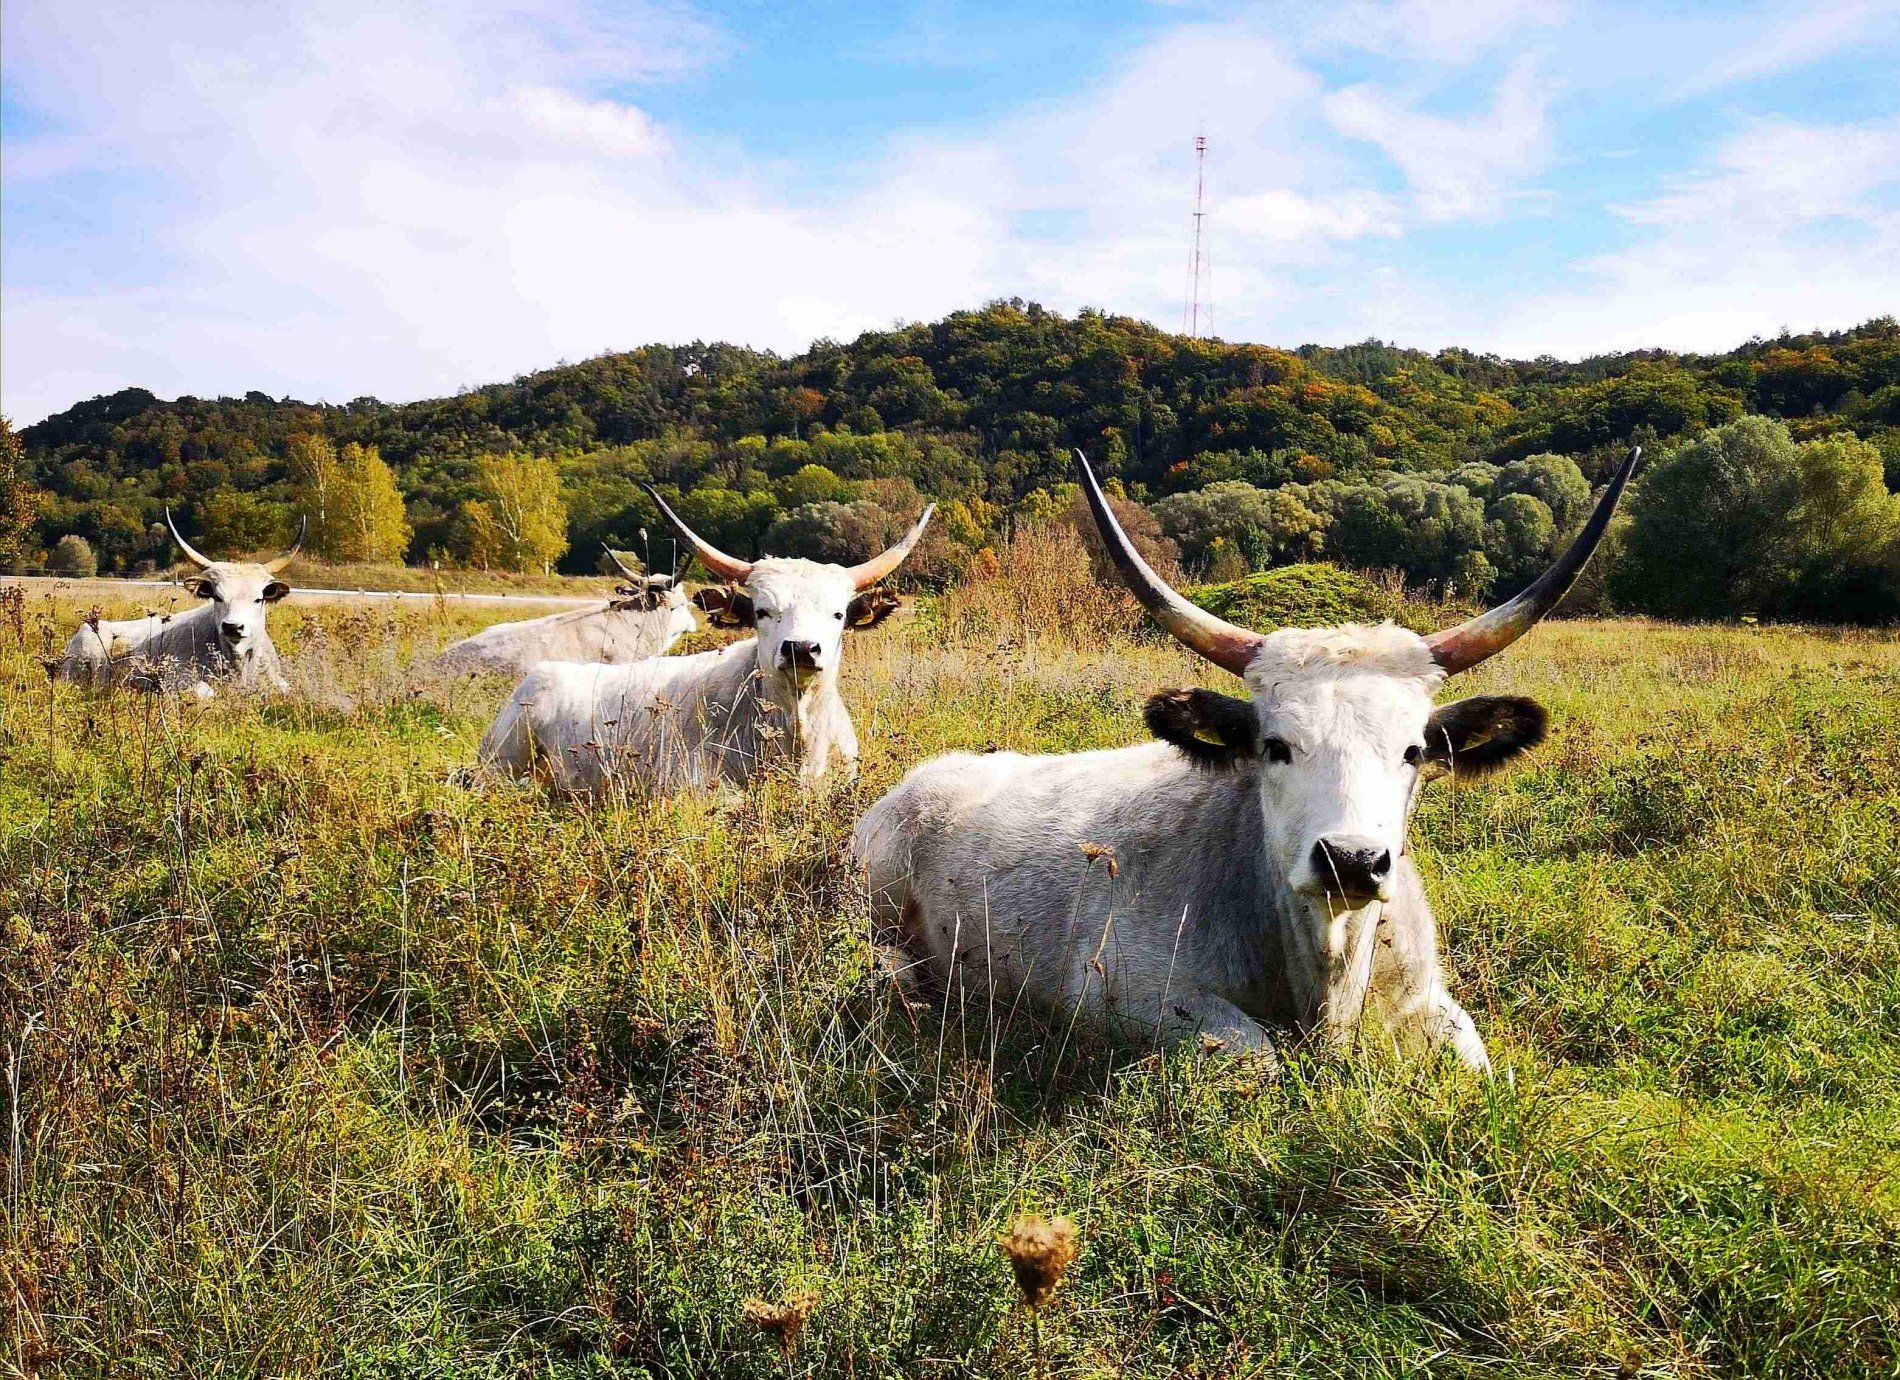 Ochsen "Oxen" in der Ochsenau im Landkreis Landshut